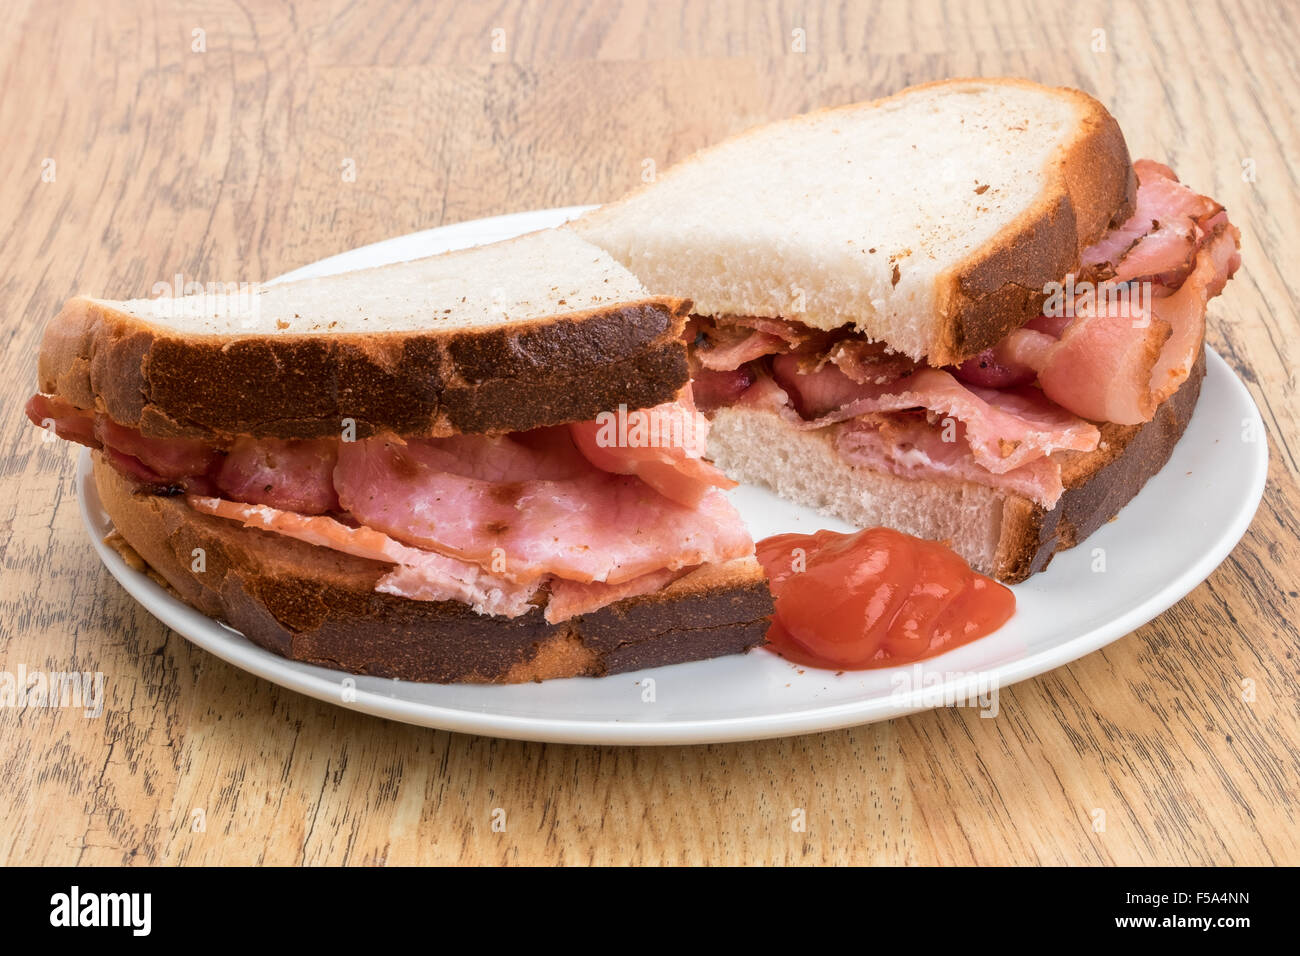 Crispy bacon inside a crusty bread sandwich Stock Photo